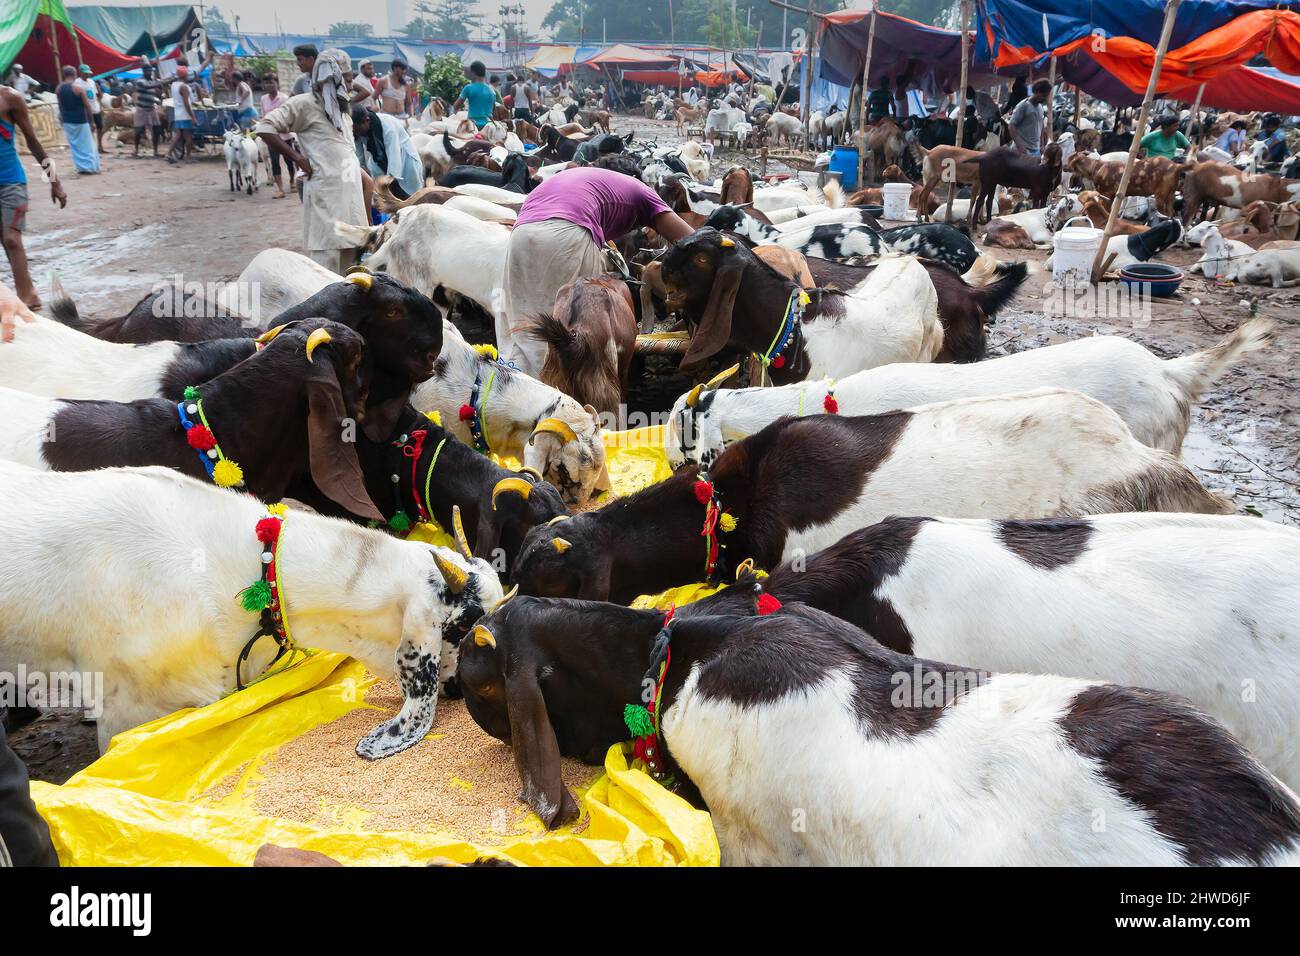 Kalkutta, Westbengalen, Indien - 11.. August 2019 : Ziegenverkäufer füttert Ziegen, die während der 'Eid al-Adha' oder Eid Qurban auf dem Markt verkauft werden. Stockfoto